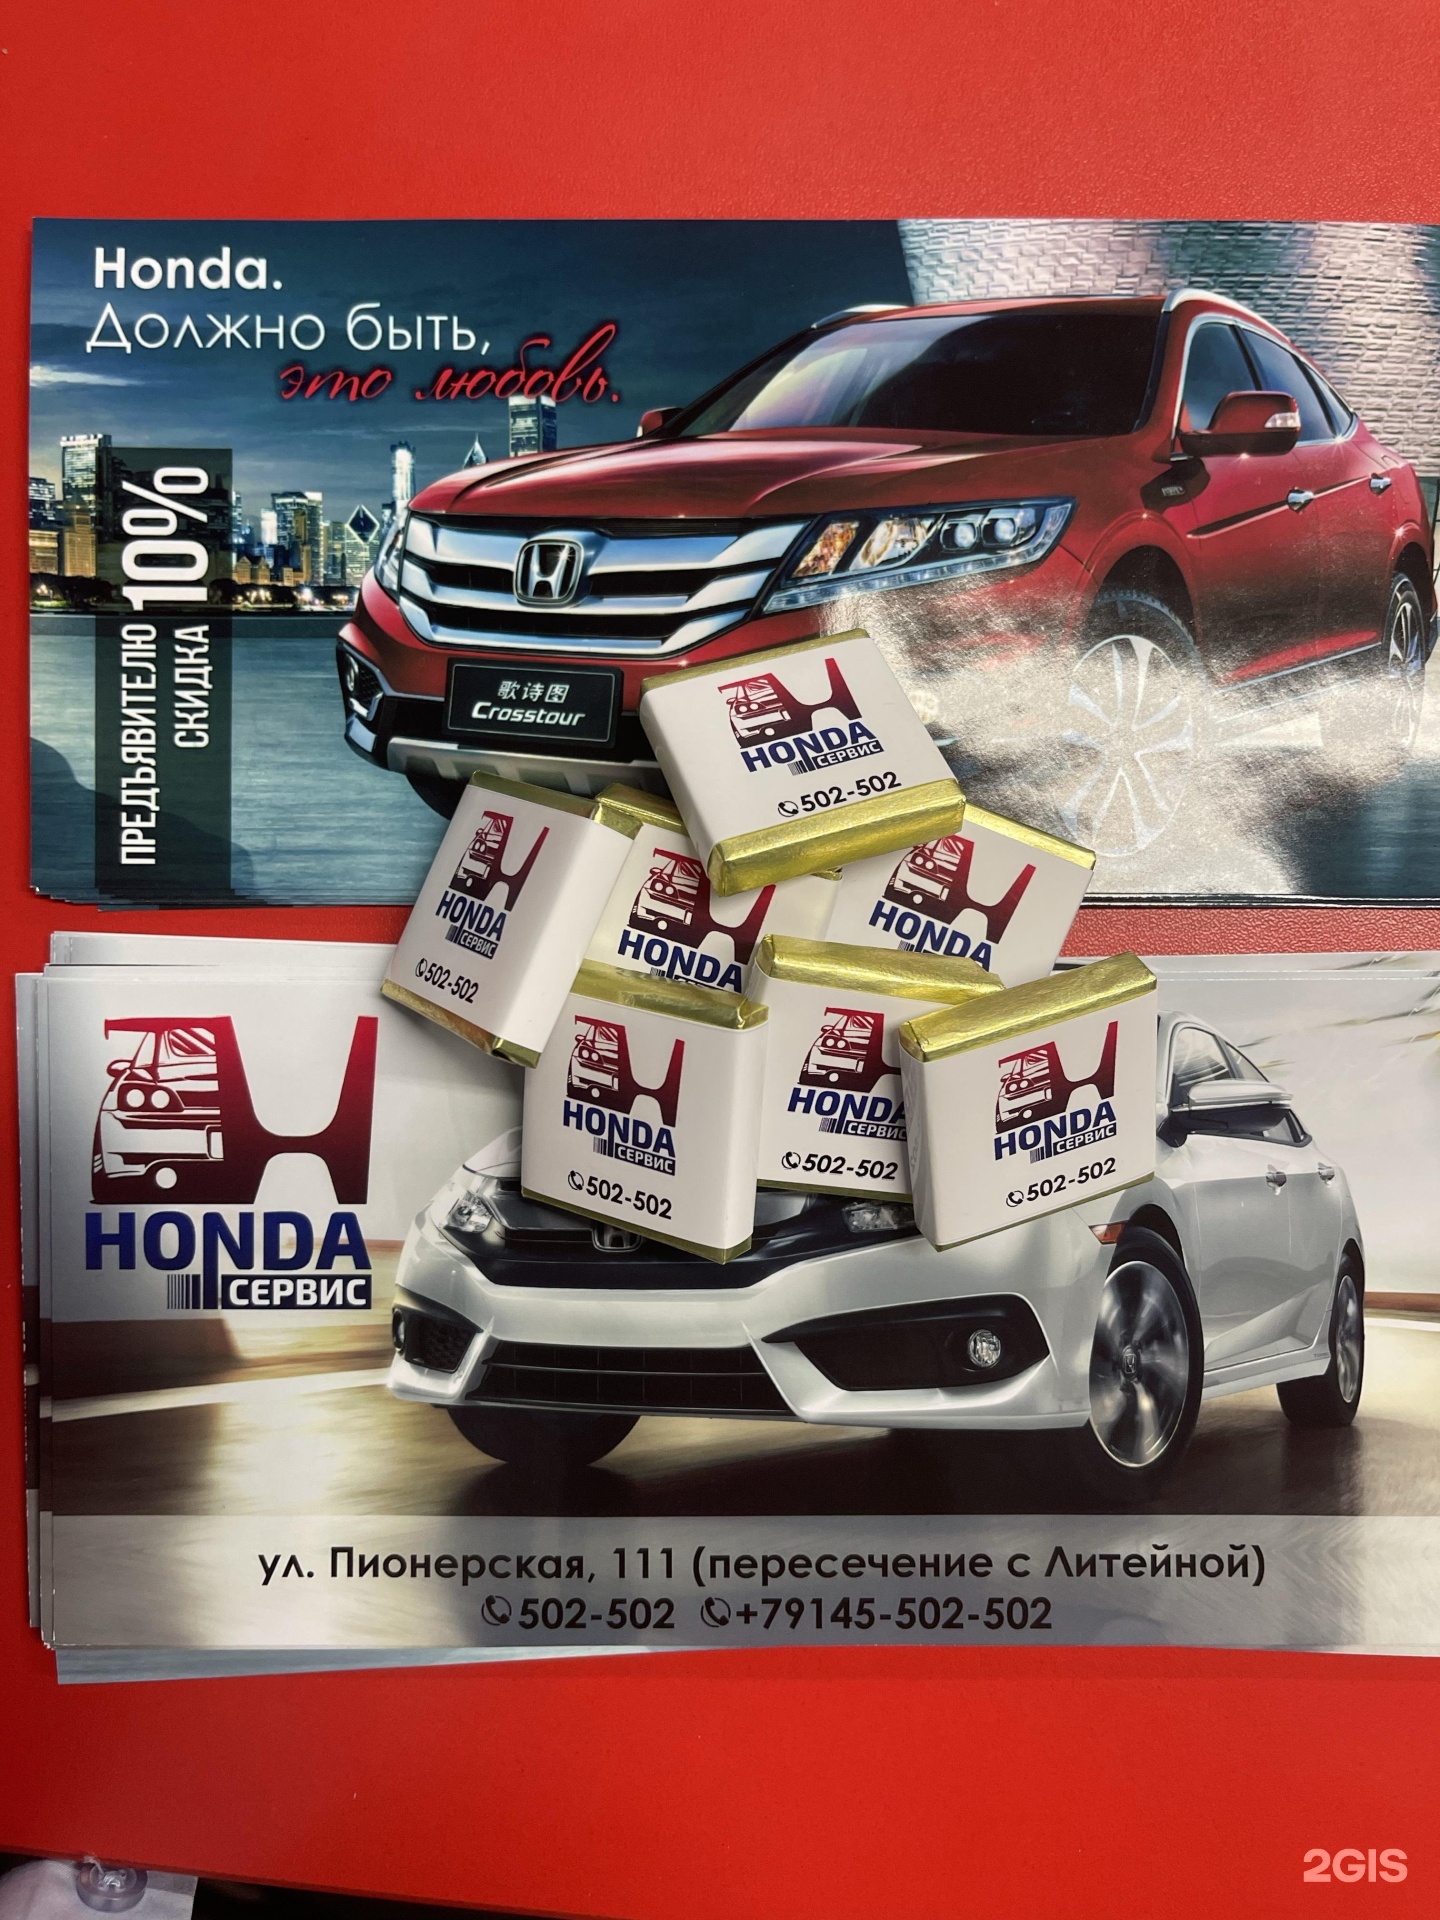 Honda service manuals